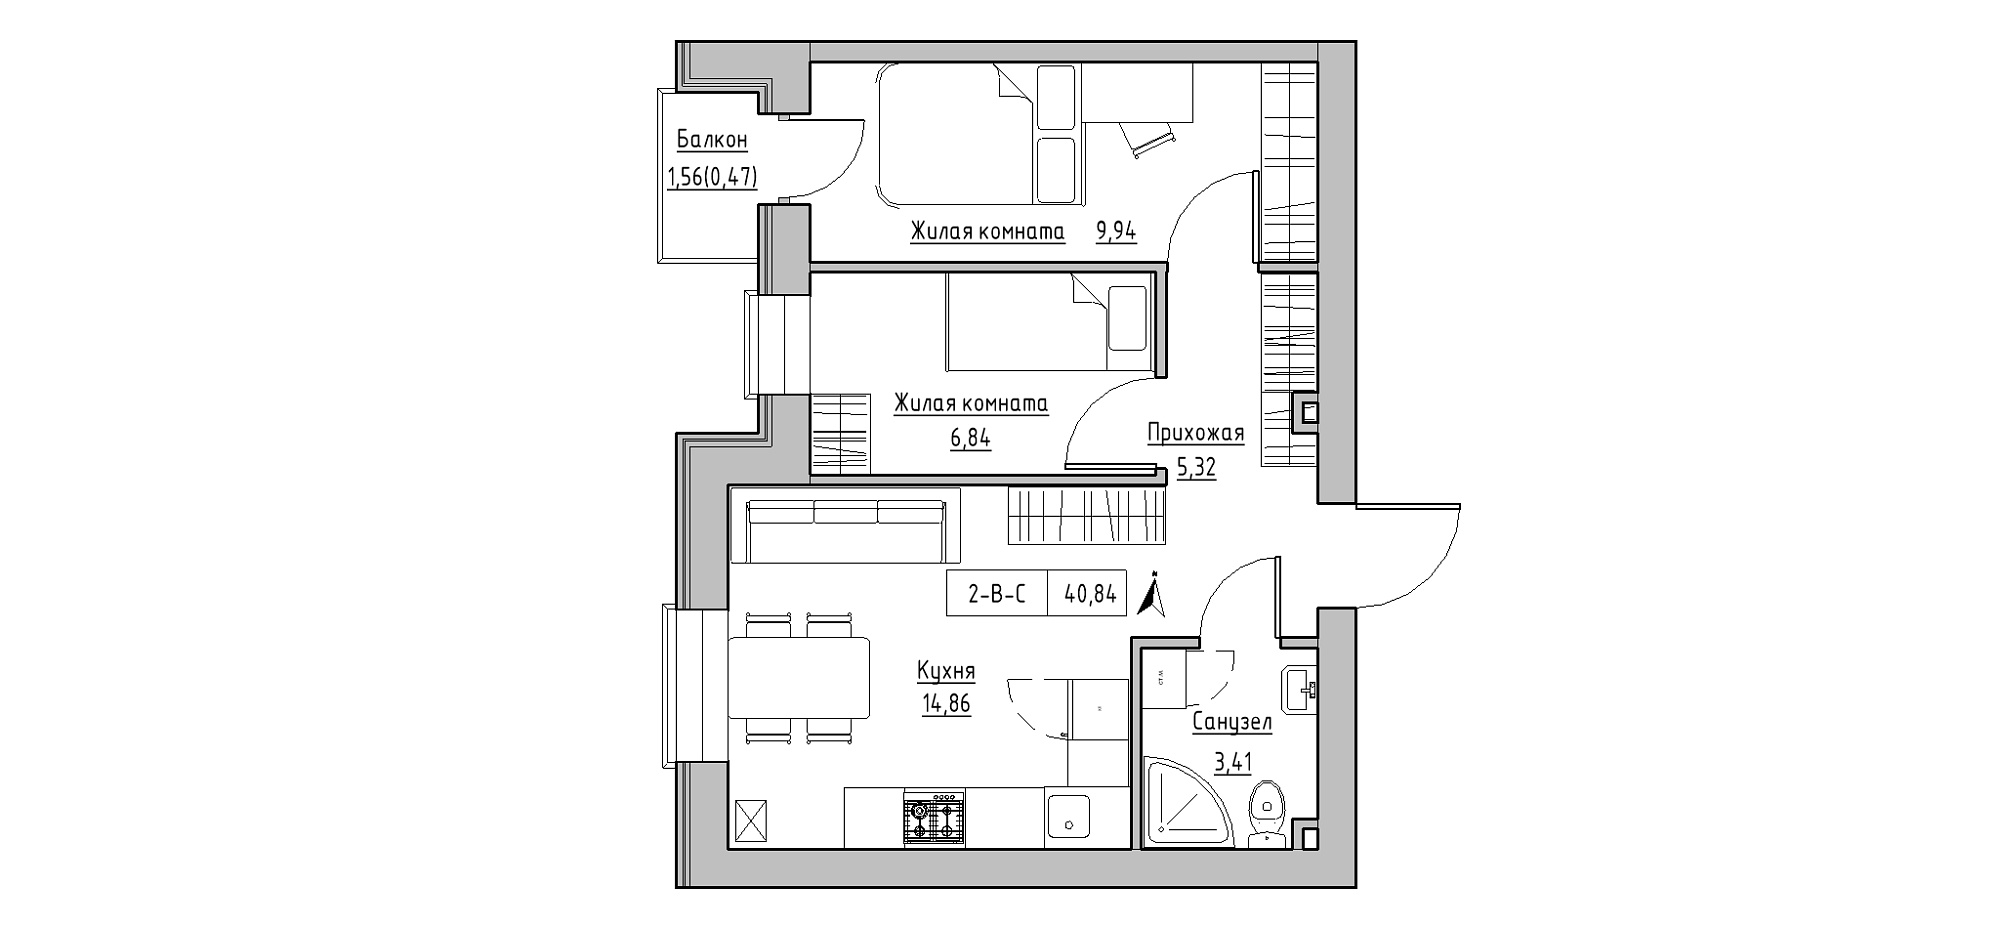 Планировка 2-к квартира площей 40.84м2, KS-020-04/0010.